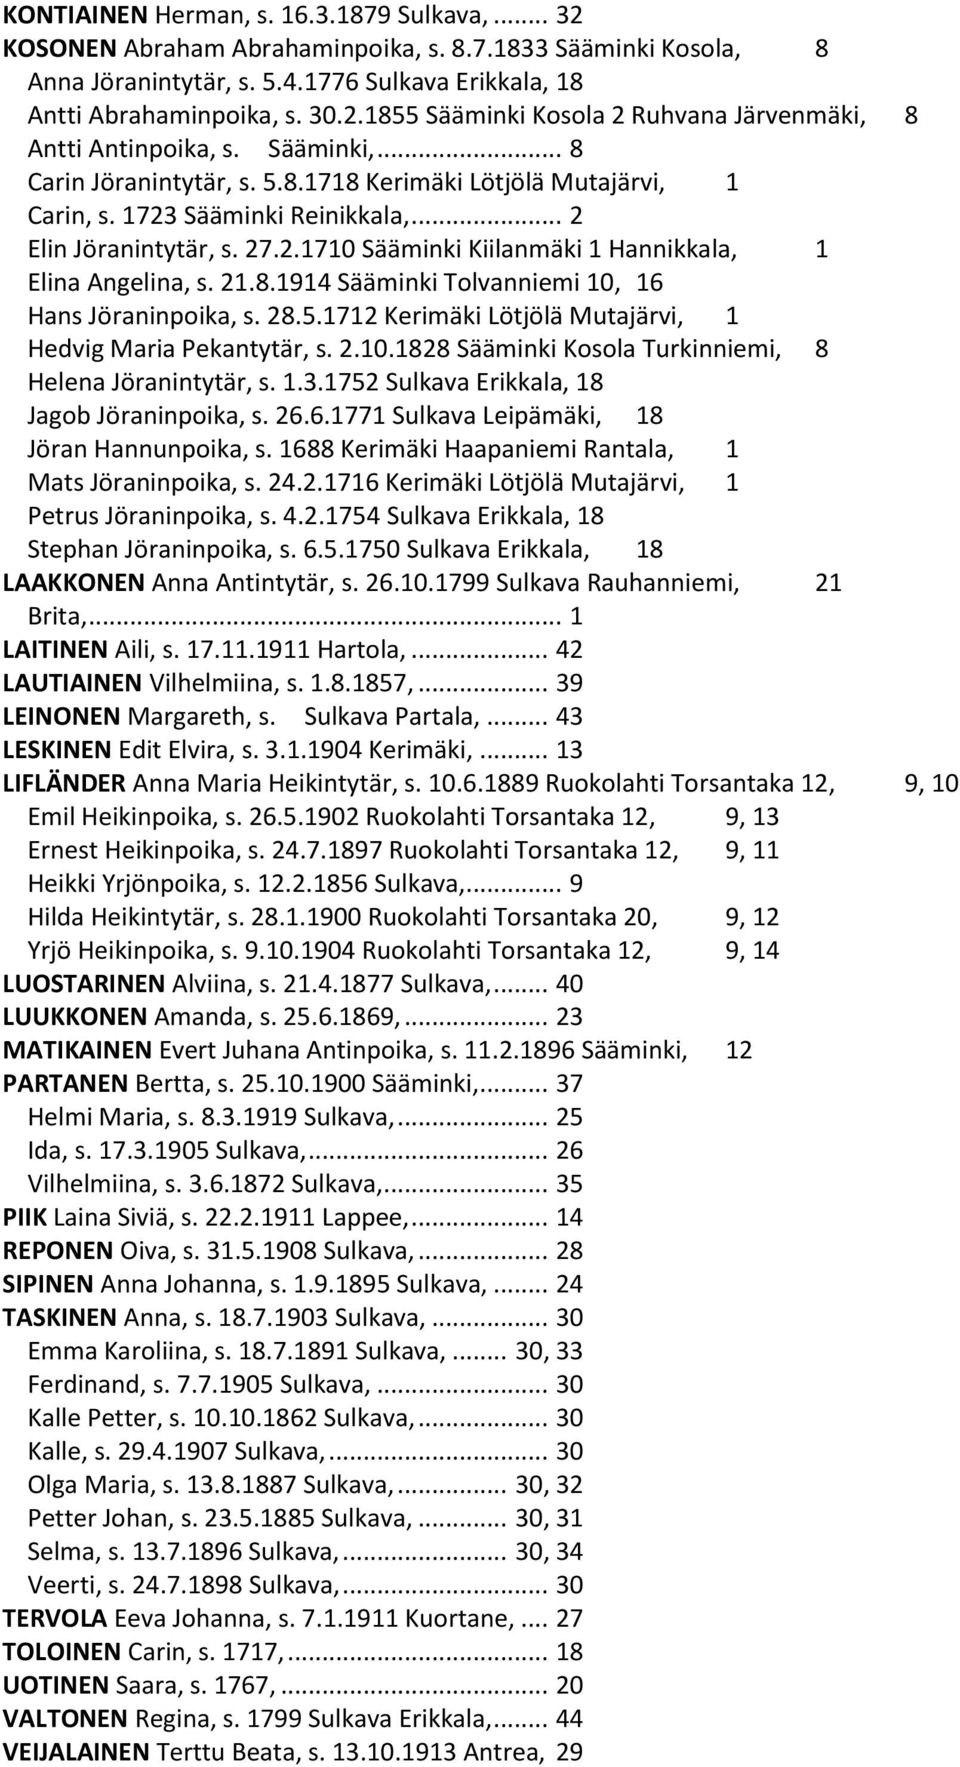 21.8.1914 Sääminki Tolvanniemi 10, 16 Hans Jöraninpoika, s. 28.5.1712 Kerimäki Lötjölä Mutajärvi, 1 Hedvig Maria Pekantytär, s. 2.10.1828 Sääminki Kosola Turkinniemi, 8 Helena Jöranintytär, s. 1.3.